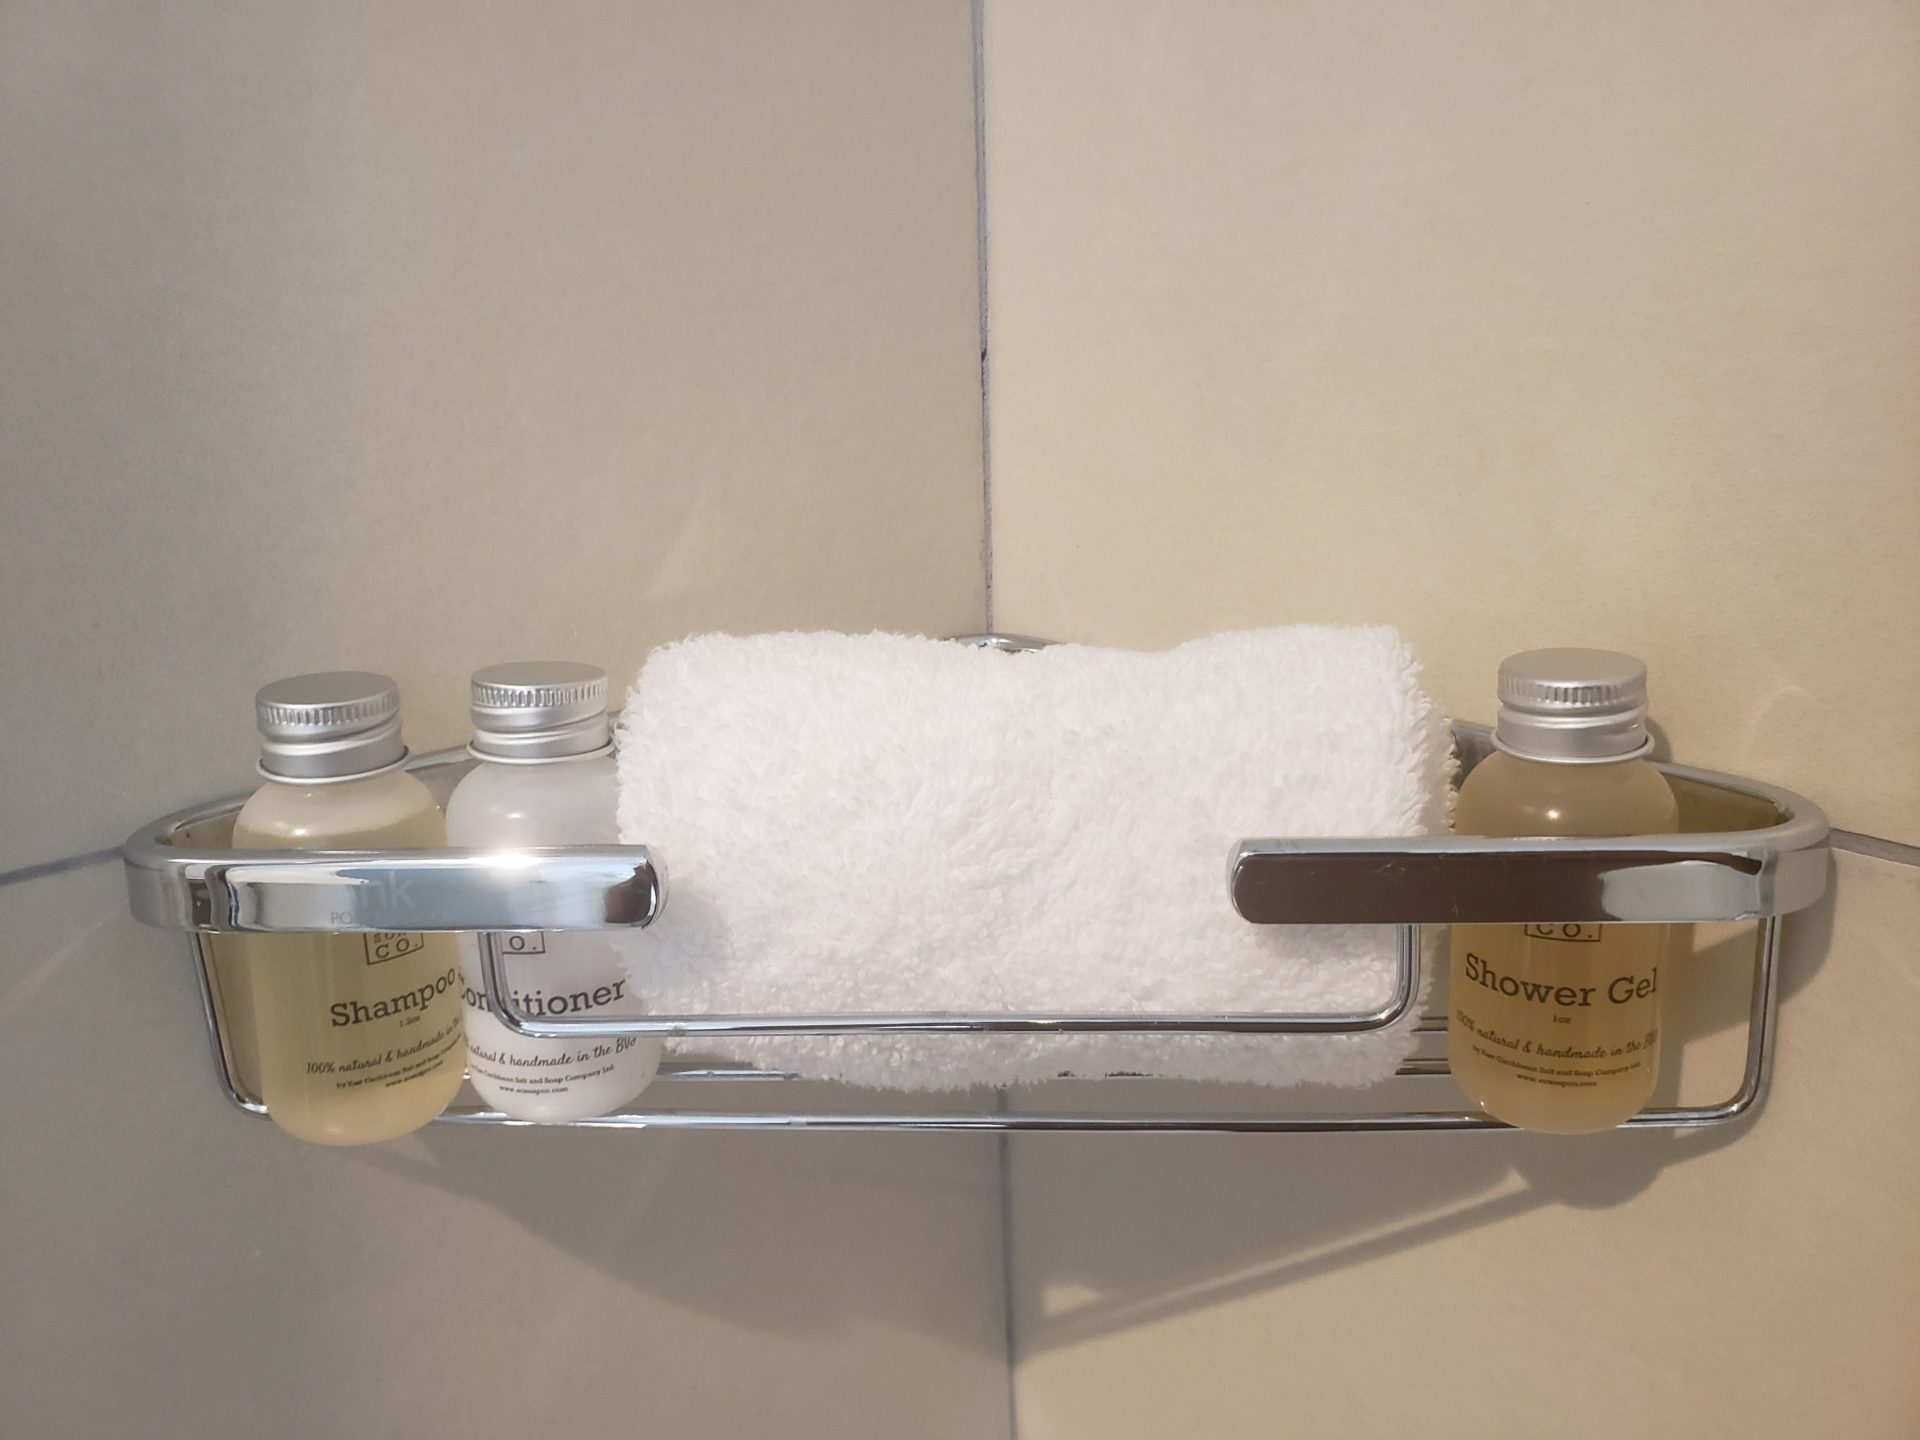 a towel and bottles of shampoo on a shelf